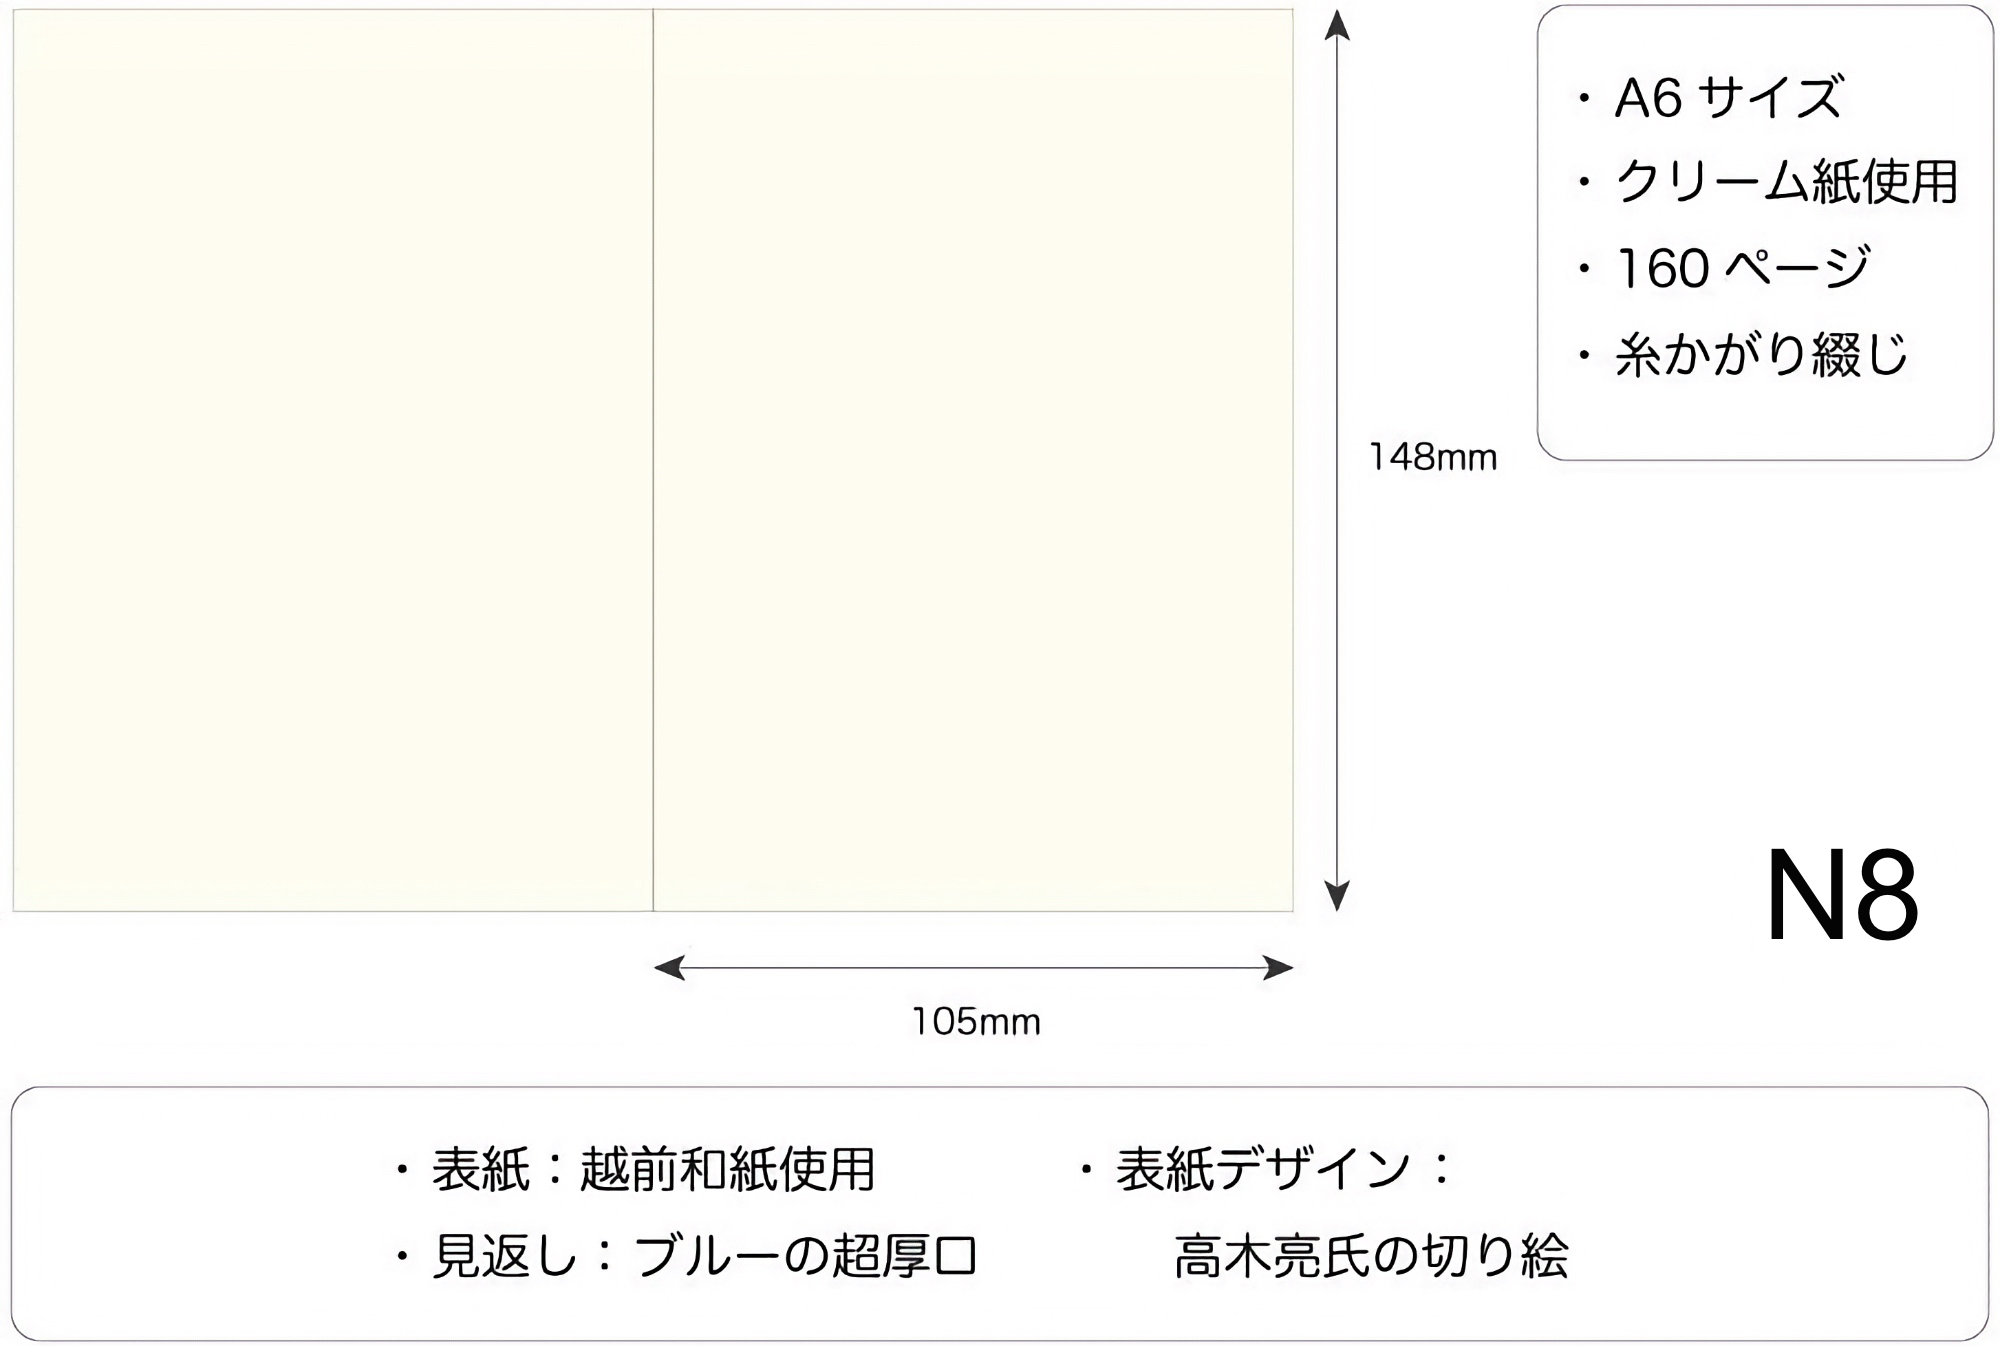 Masuya Monokaki Notebook A6 Blank